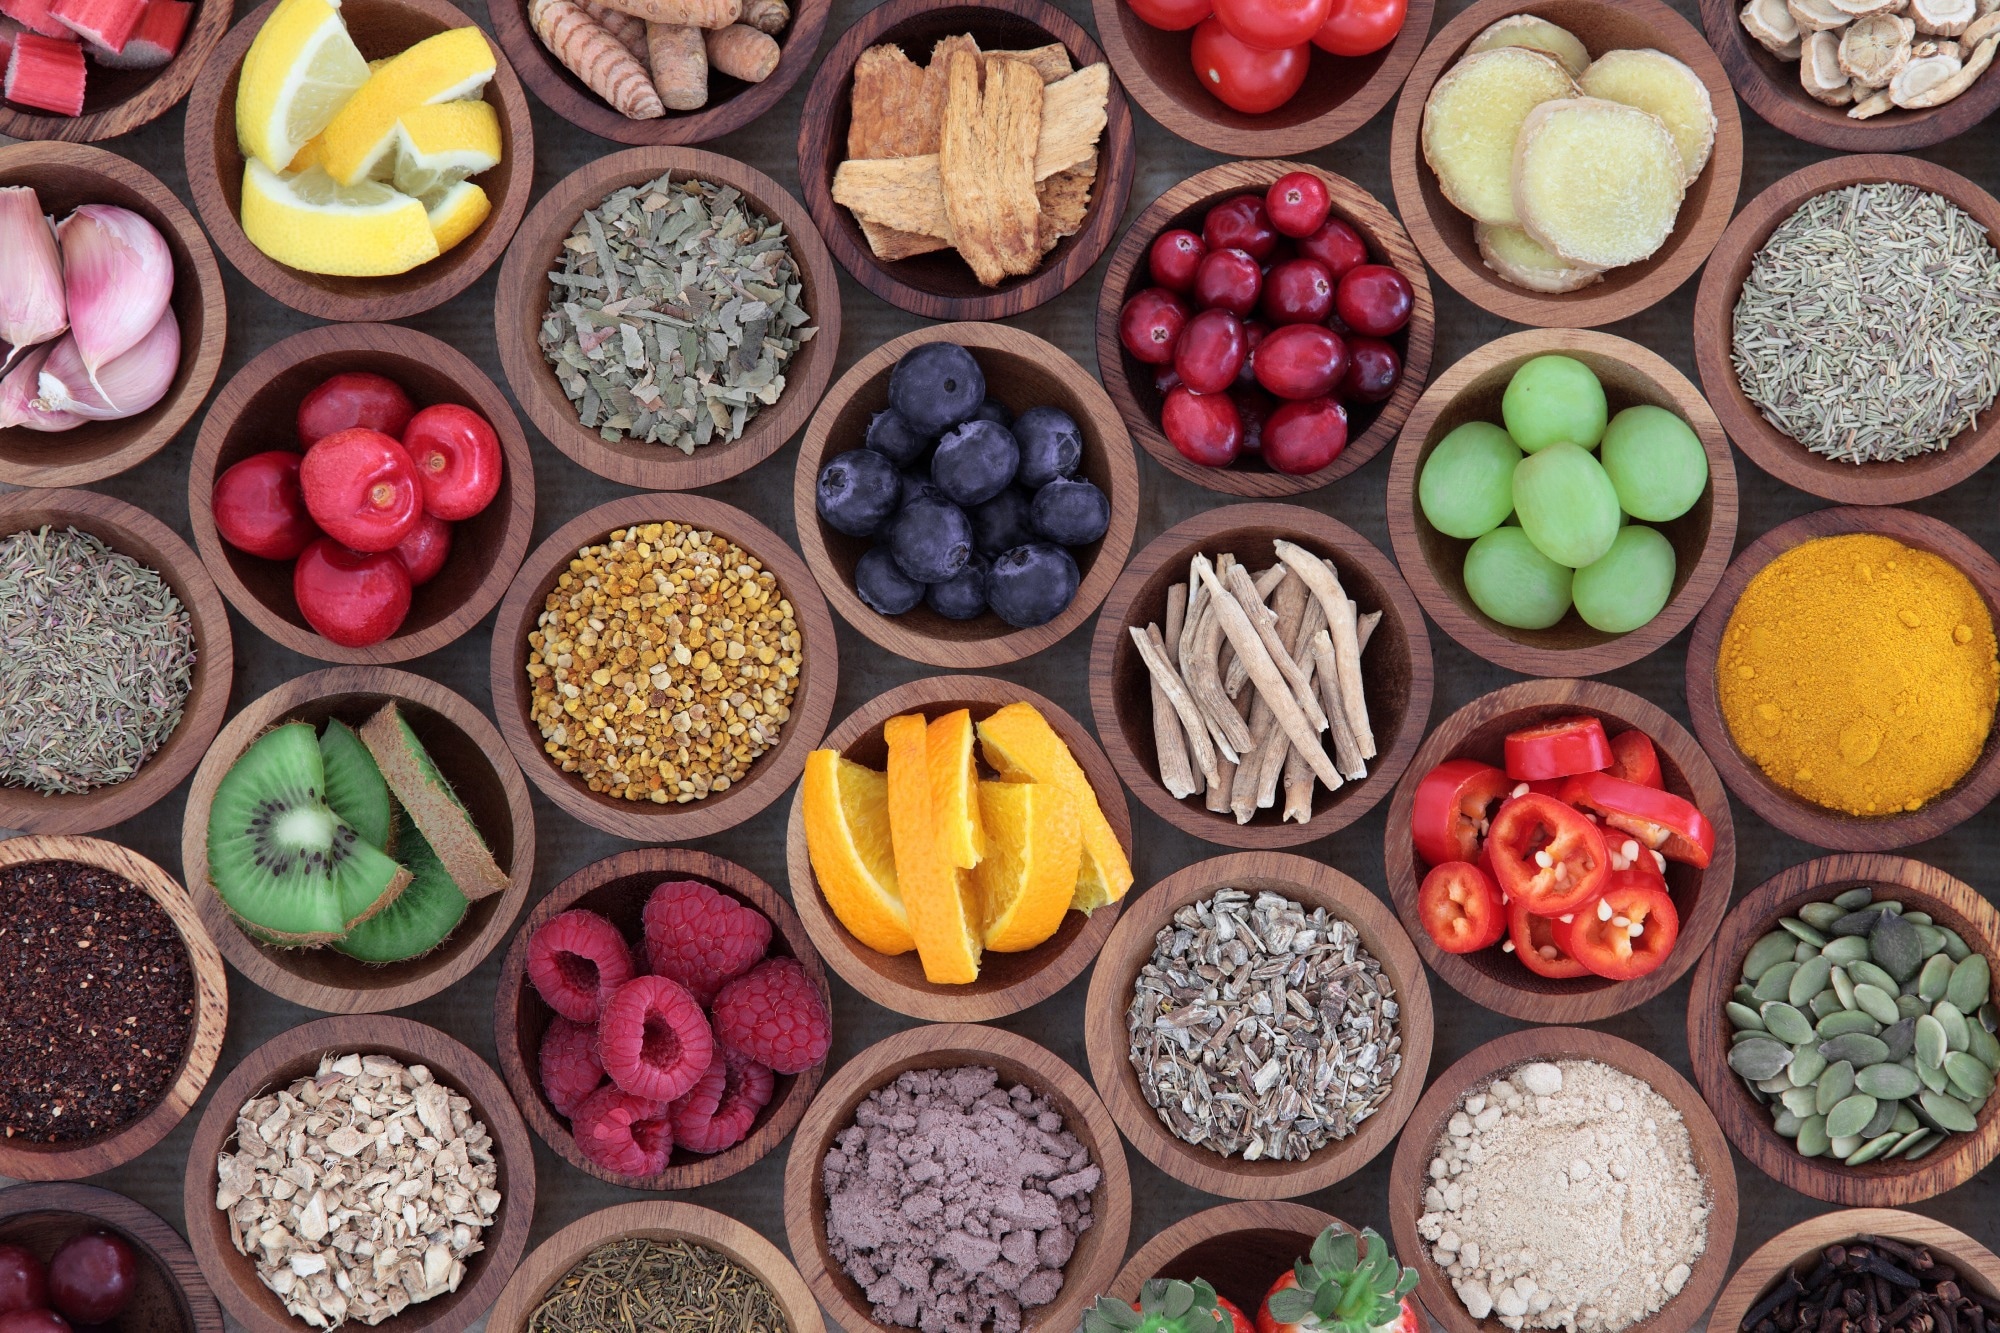 Il cibo è medicina: studi clinici mostrano i benefici per la salute degli interventi dietetici. Credito di immagine: Marilyn Barbone/Shutterstock